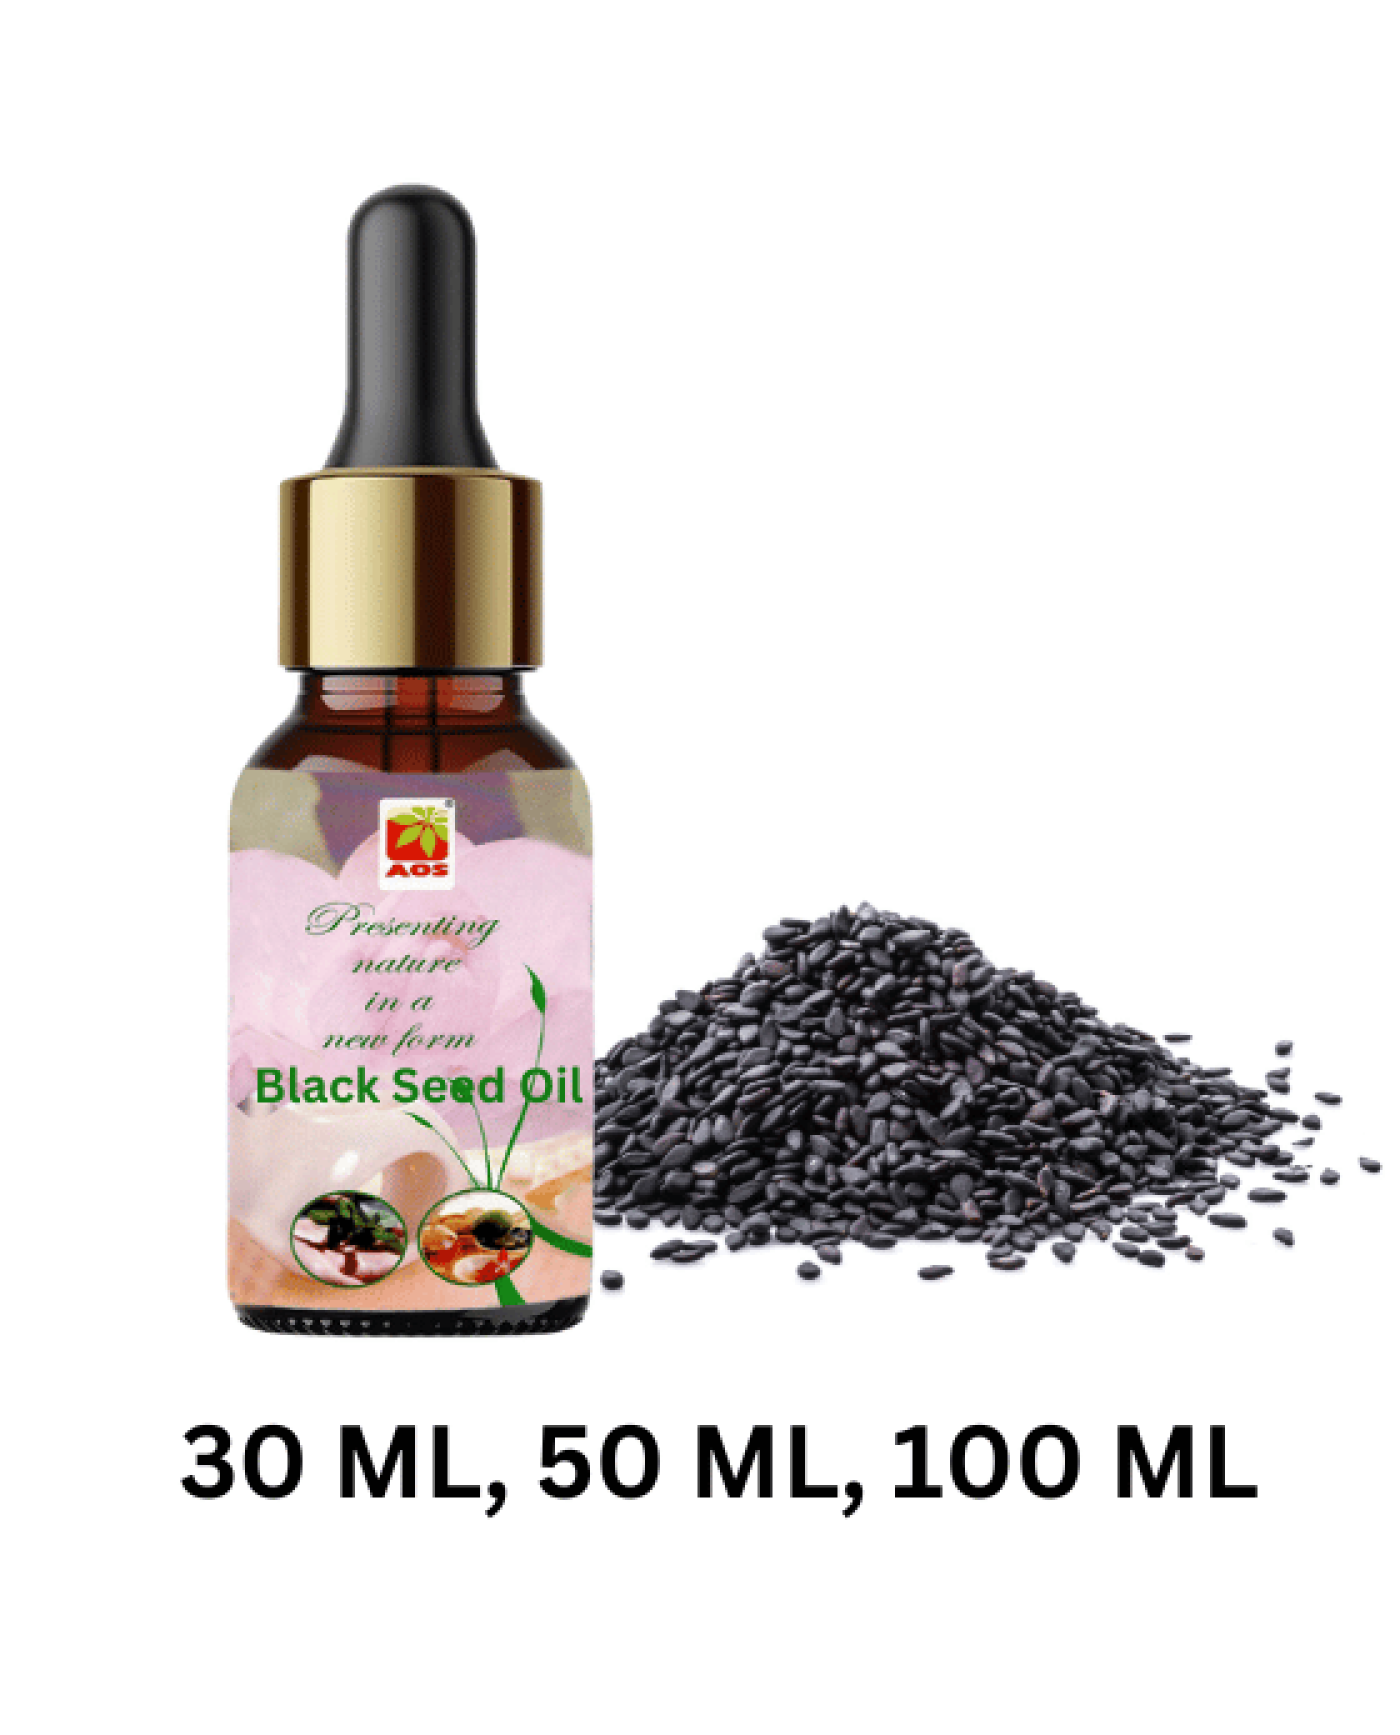 Black Seed Oil